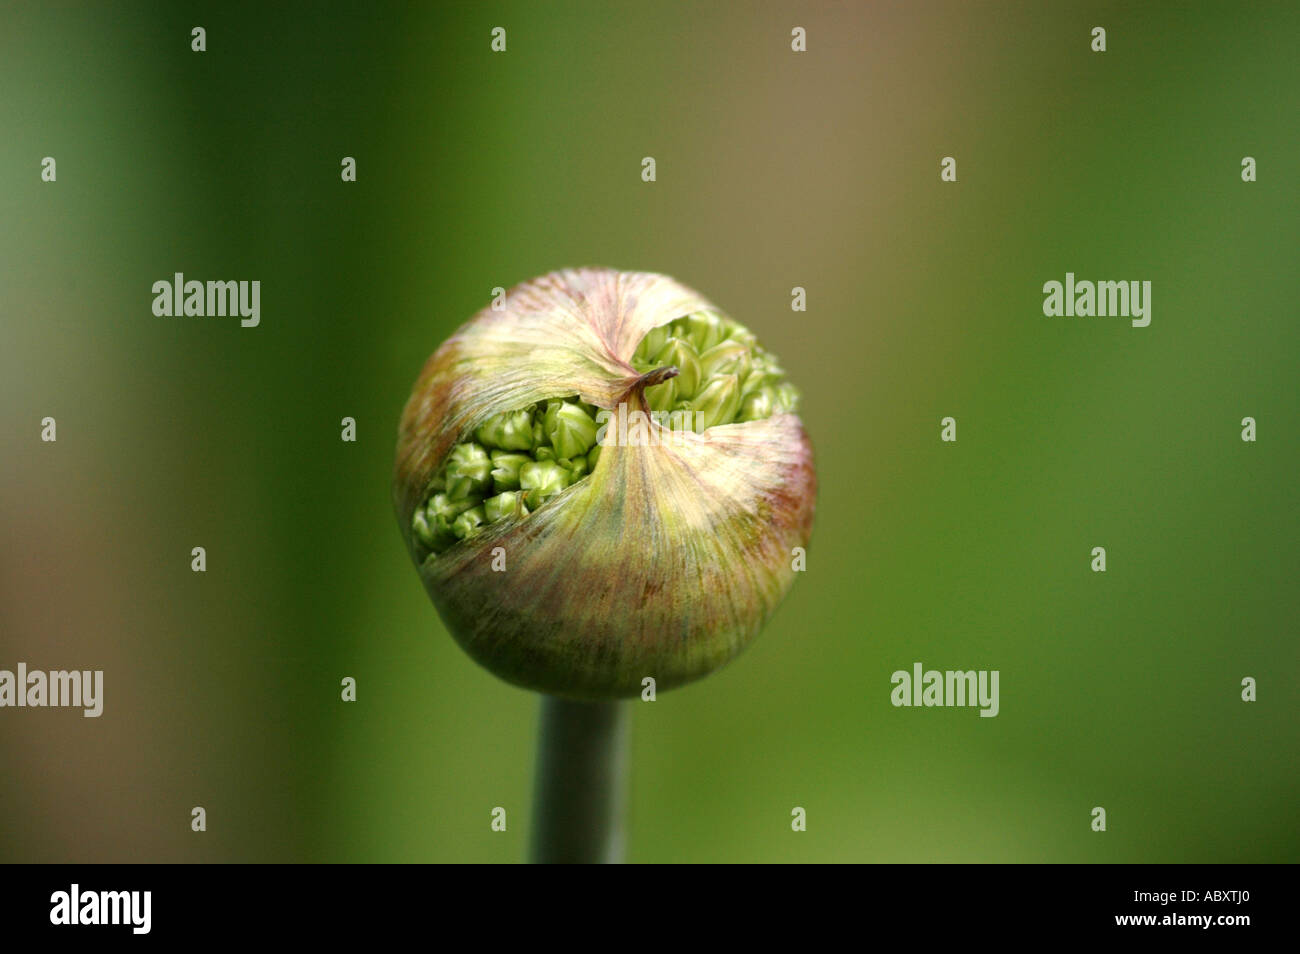 Ornamental Onion Allium stipitatum Stock Photo